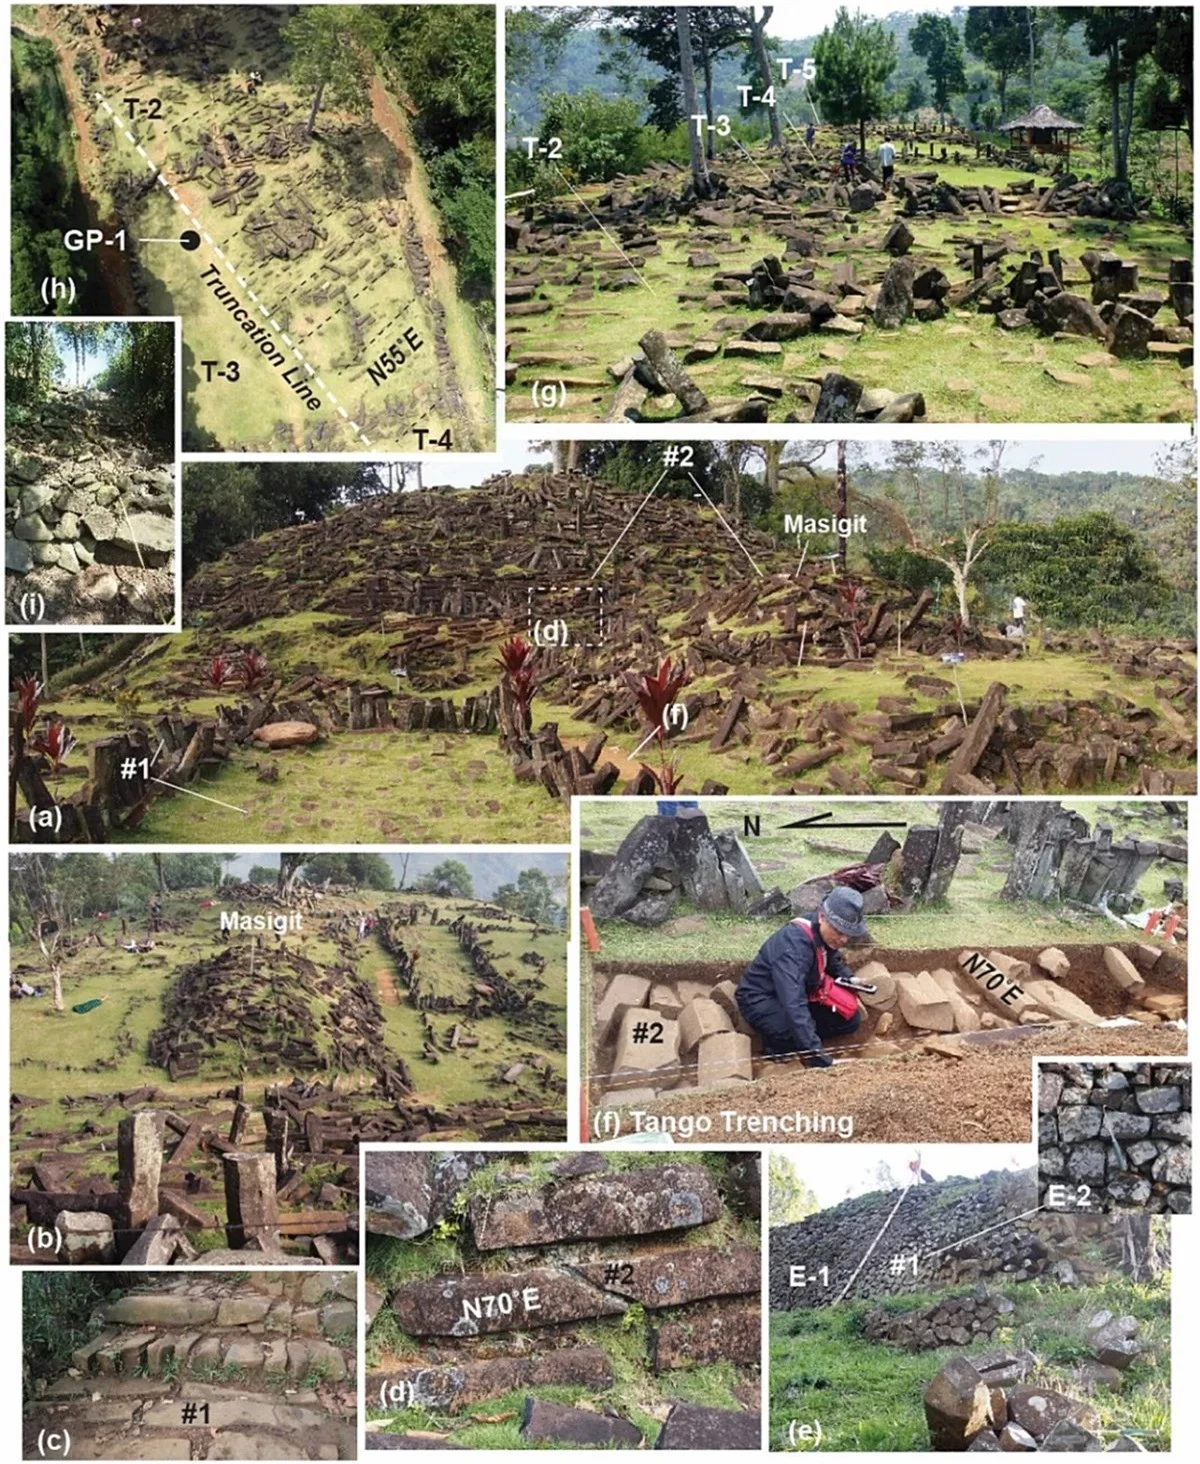 Bề mặt của Gunung Padang được bao phủ bởi những tảng cự thạch. (Ảnh: Archaeological Prospection) 